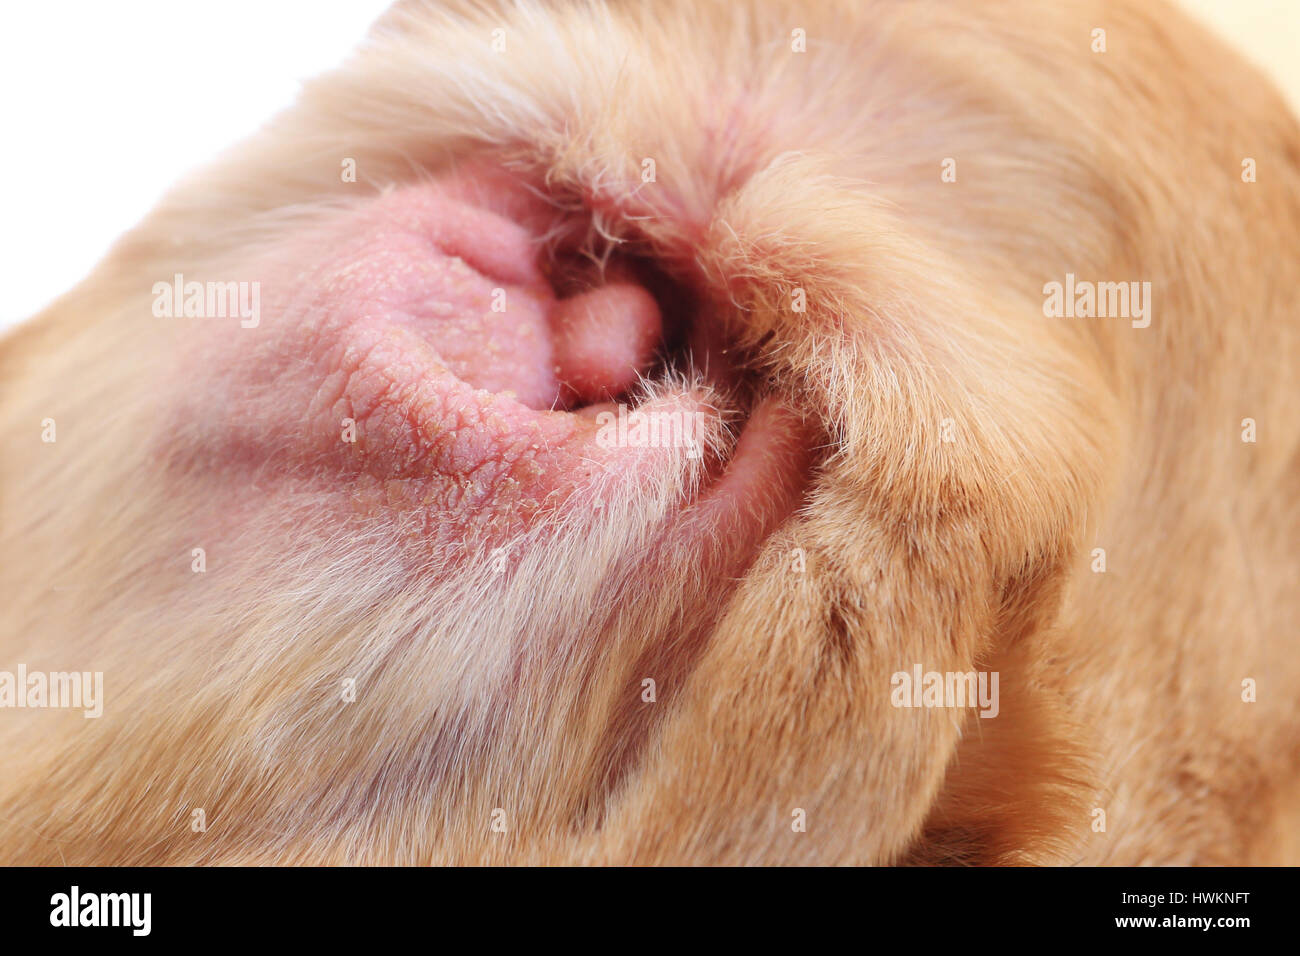 Red Dog ear closeup. Cattive condizioni del cane orecchio. Il cane rosso orecchio con allergia. Foto Stock